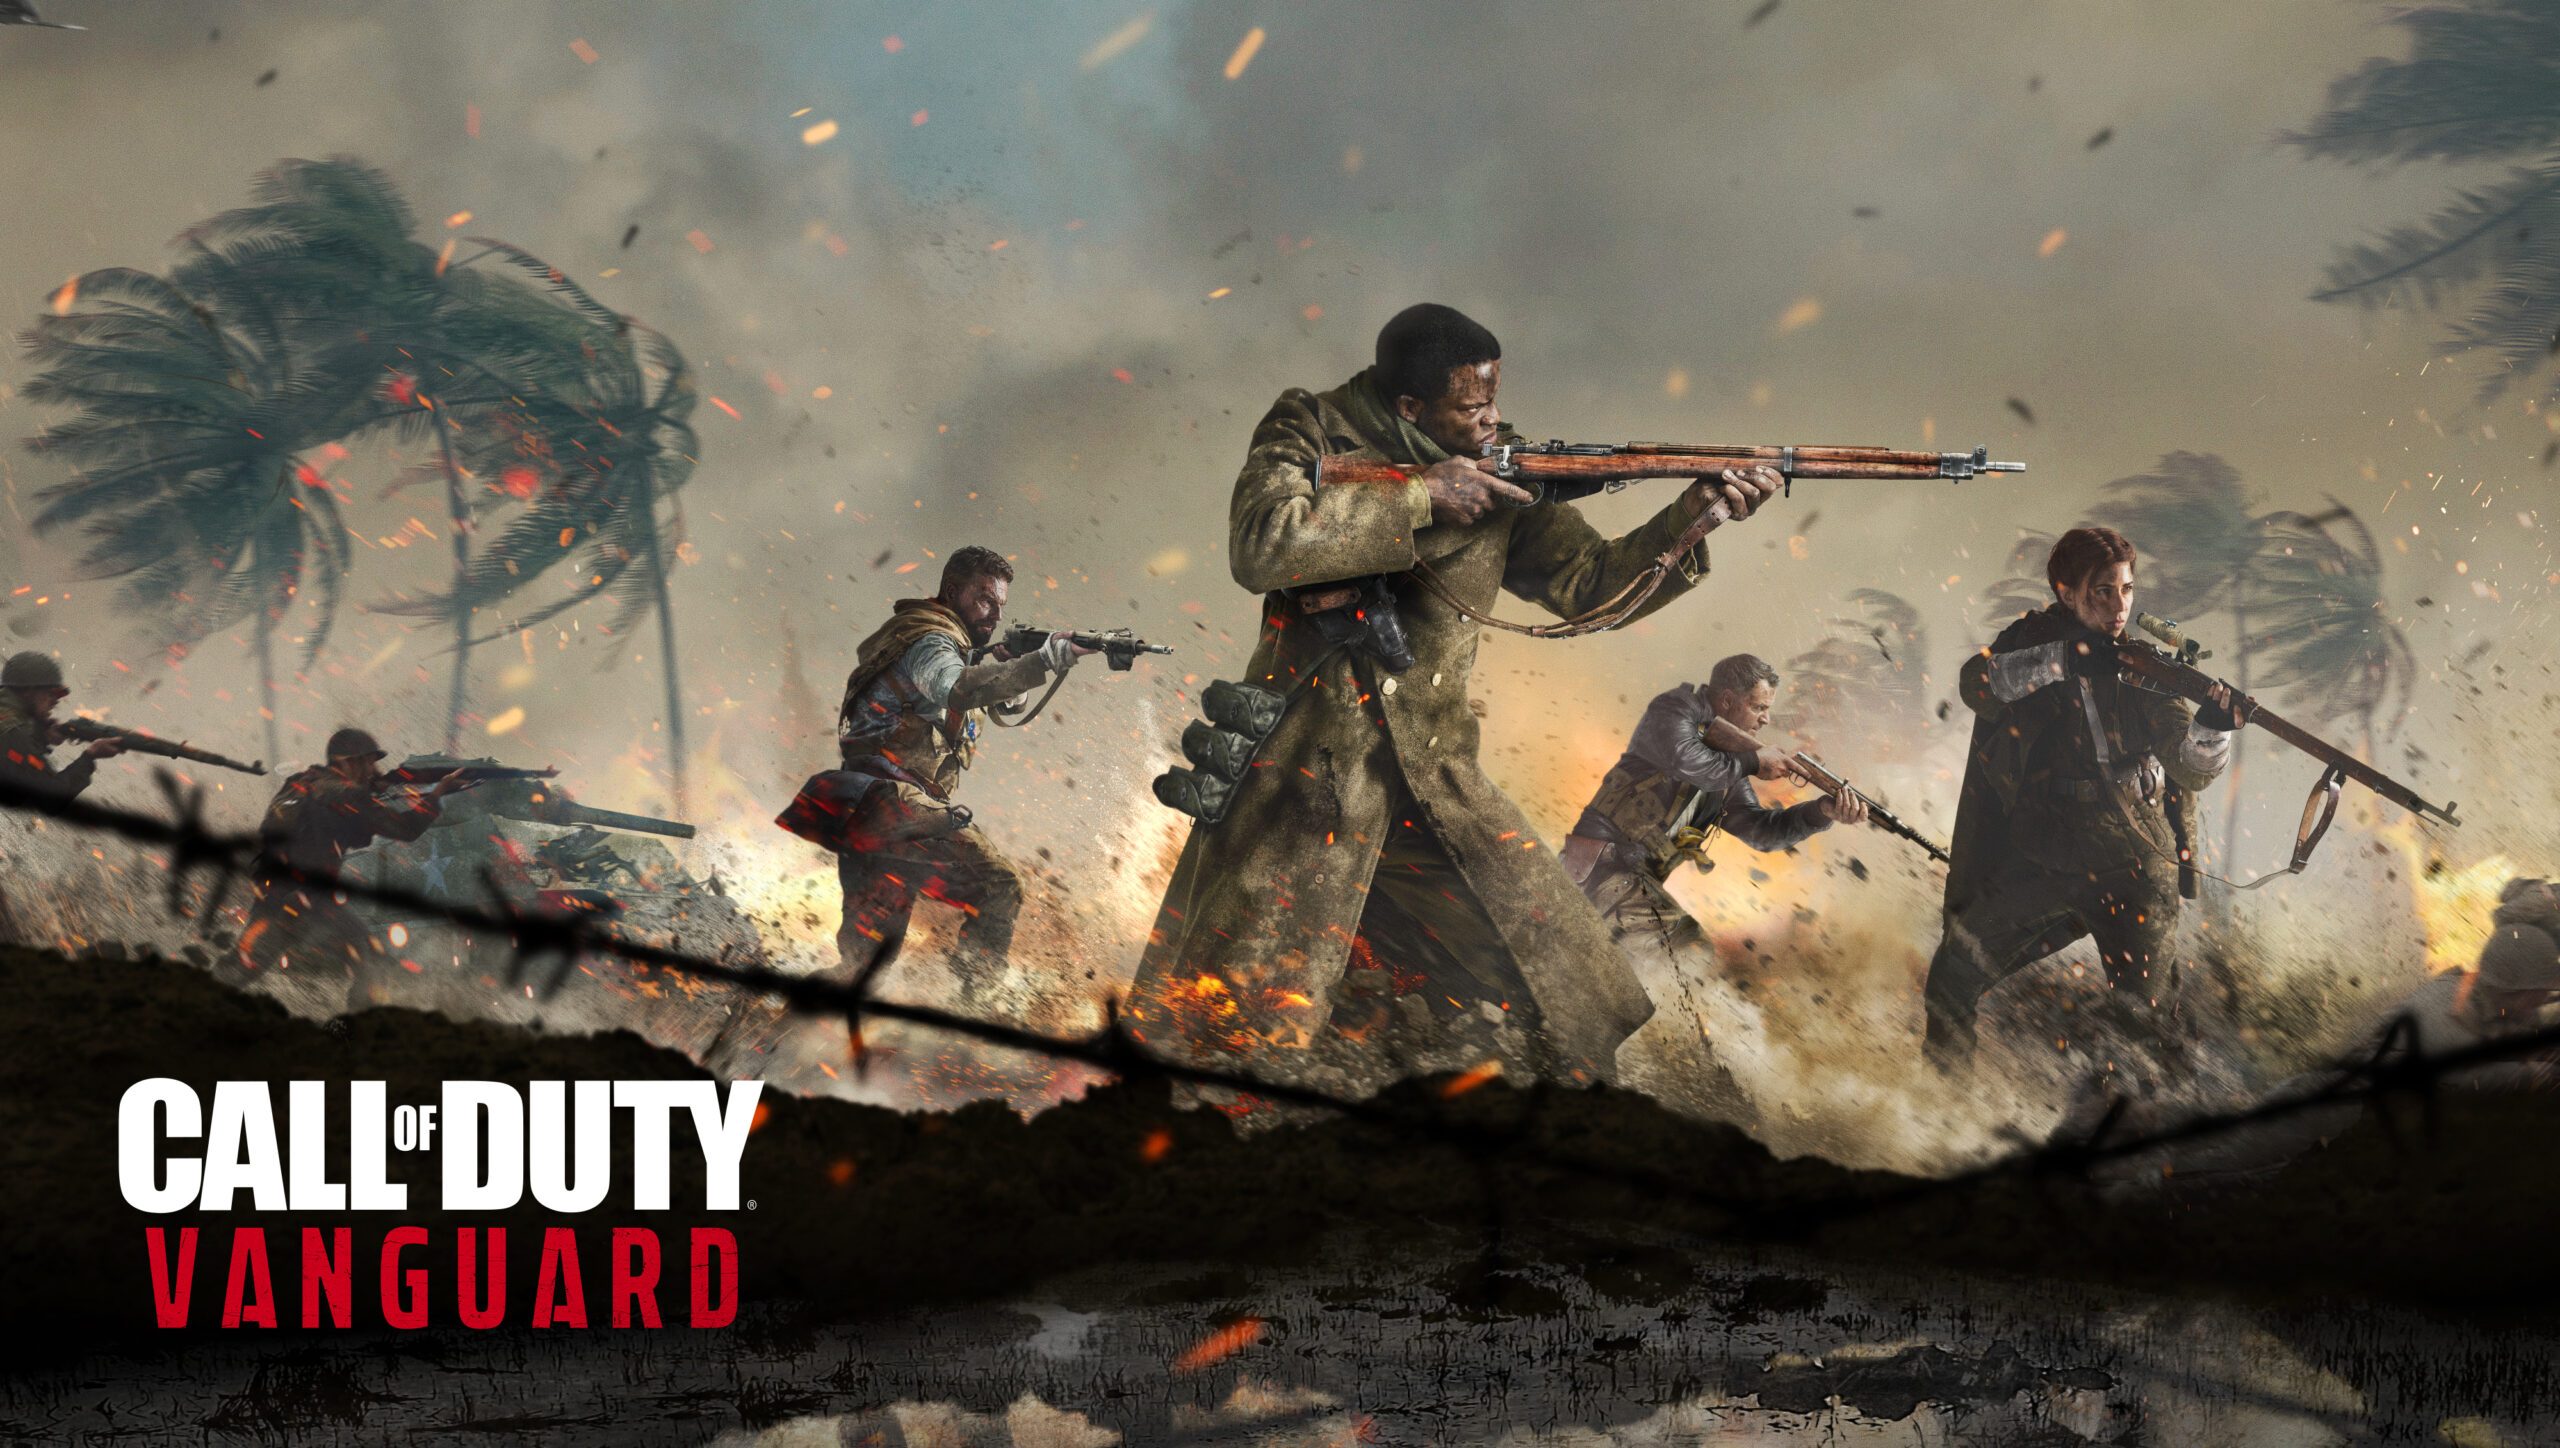 Lancement de Call of Duty: Vanguard le 5 novembre